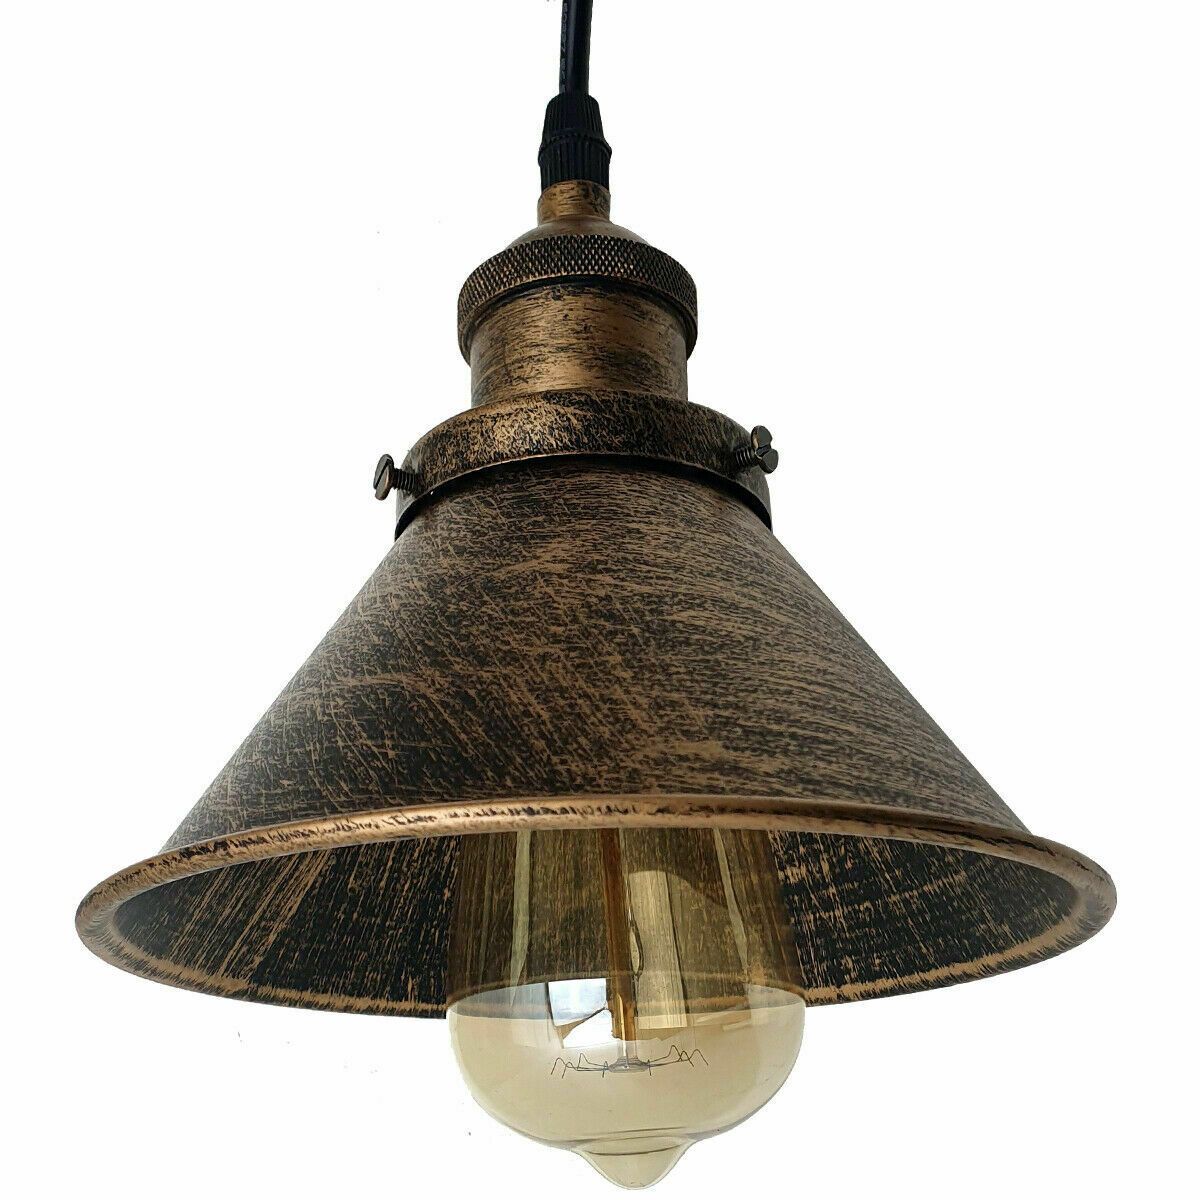  Industrial Retro Loft Metal Cone Shade Ceiling Pendant Light